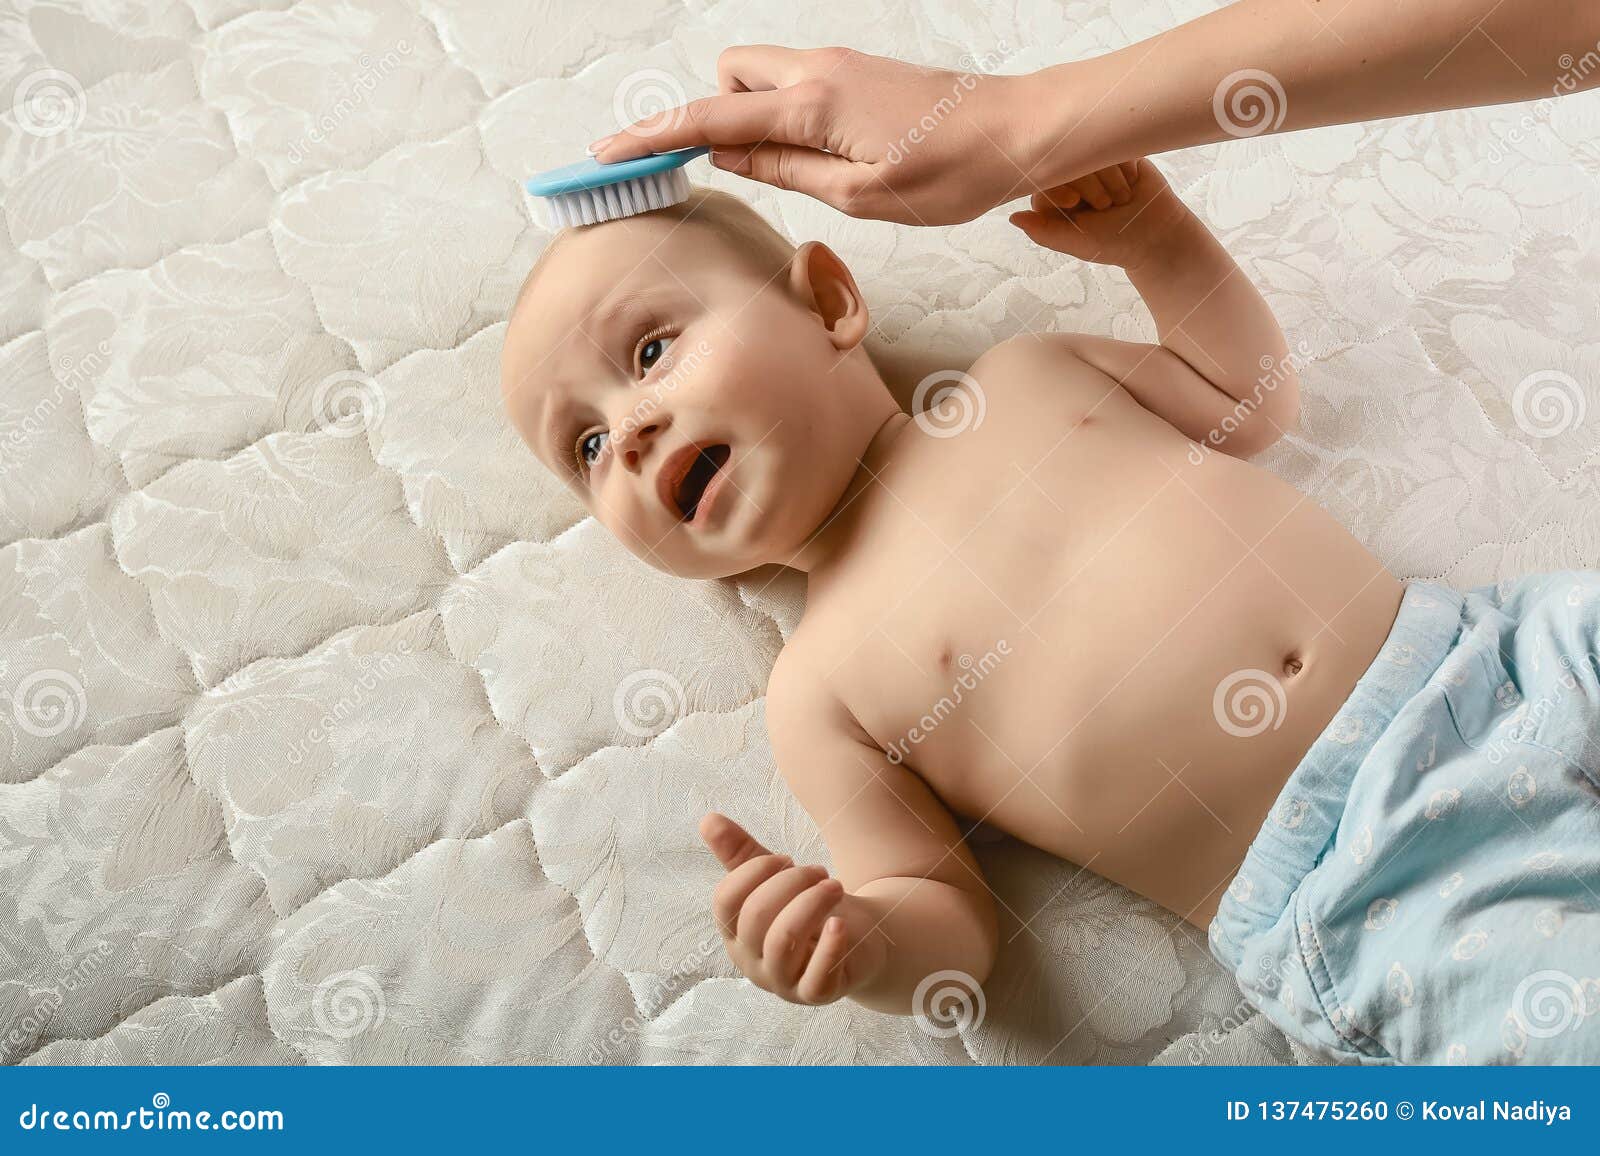 Cepillo para el cabello y cuidado del bebé. madre peinando el cabello recién  nacido